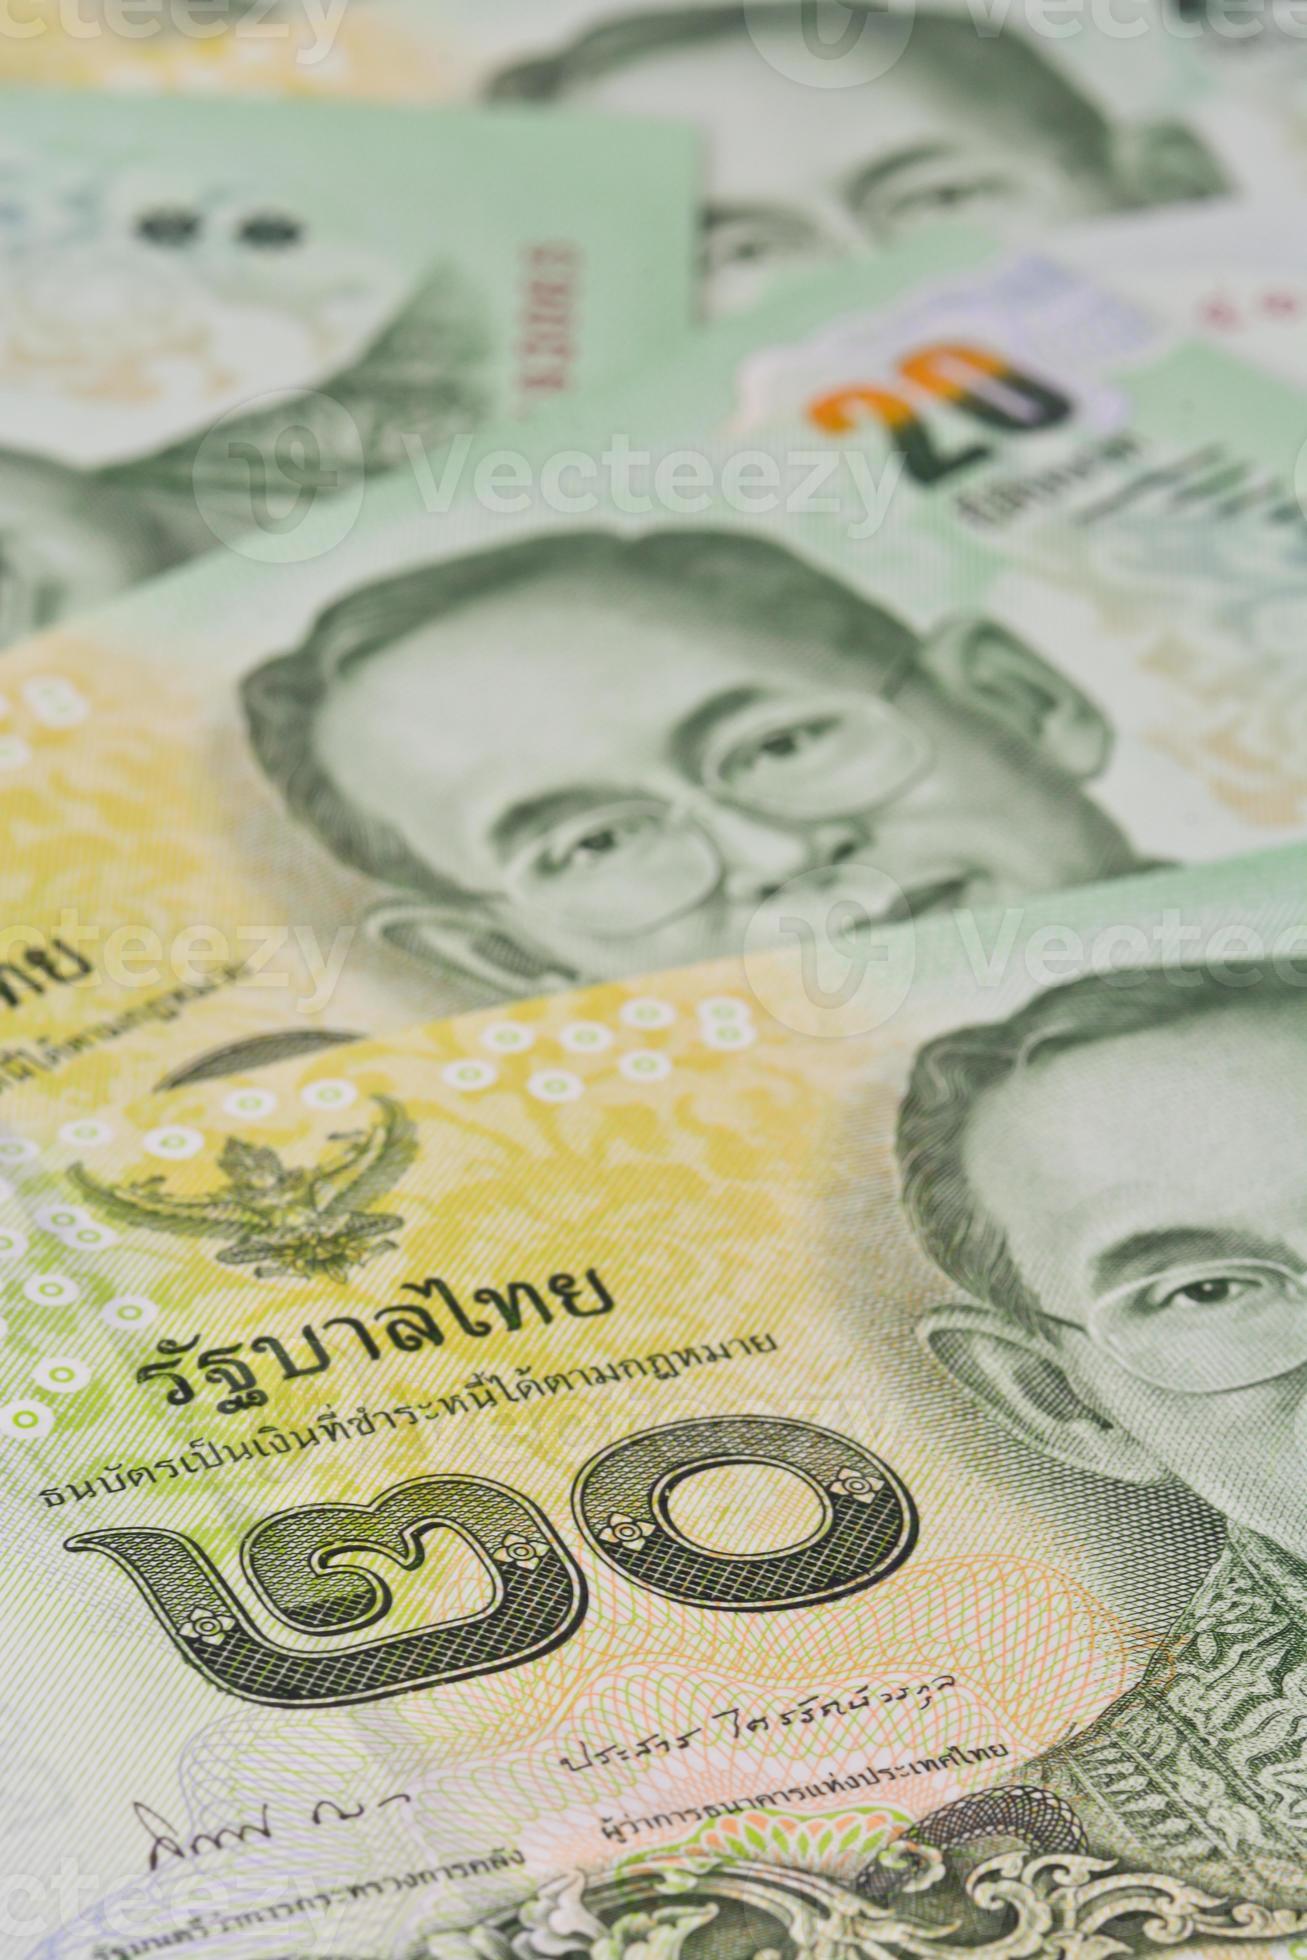 thailändska sedlar (baht) för pengar och affärsidéer foto